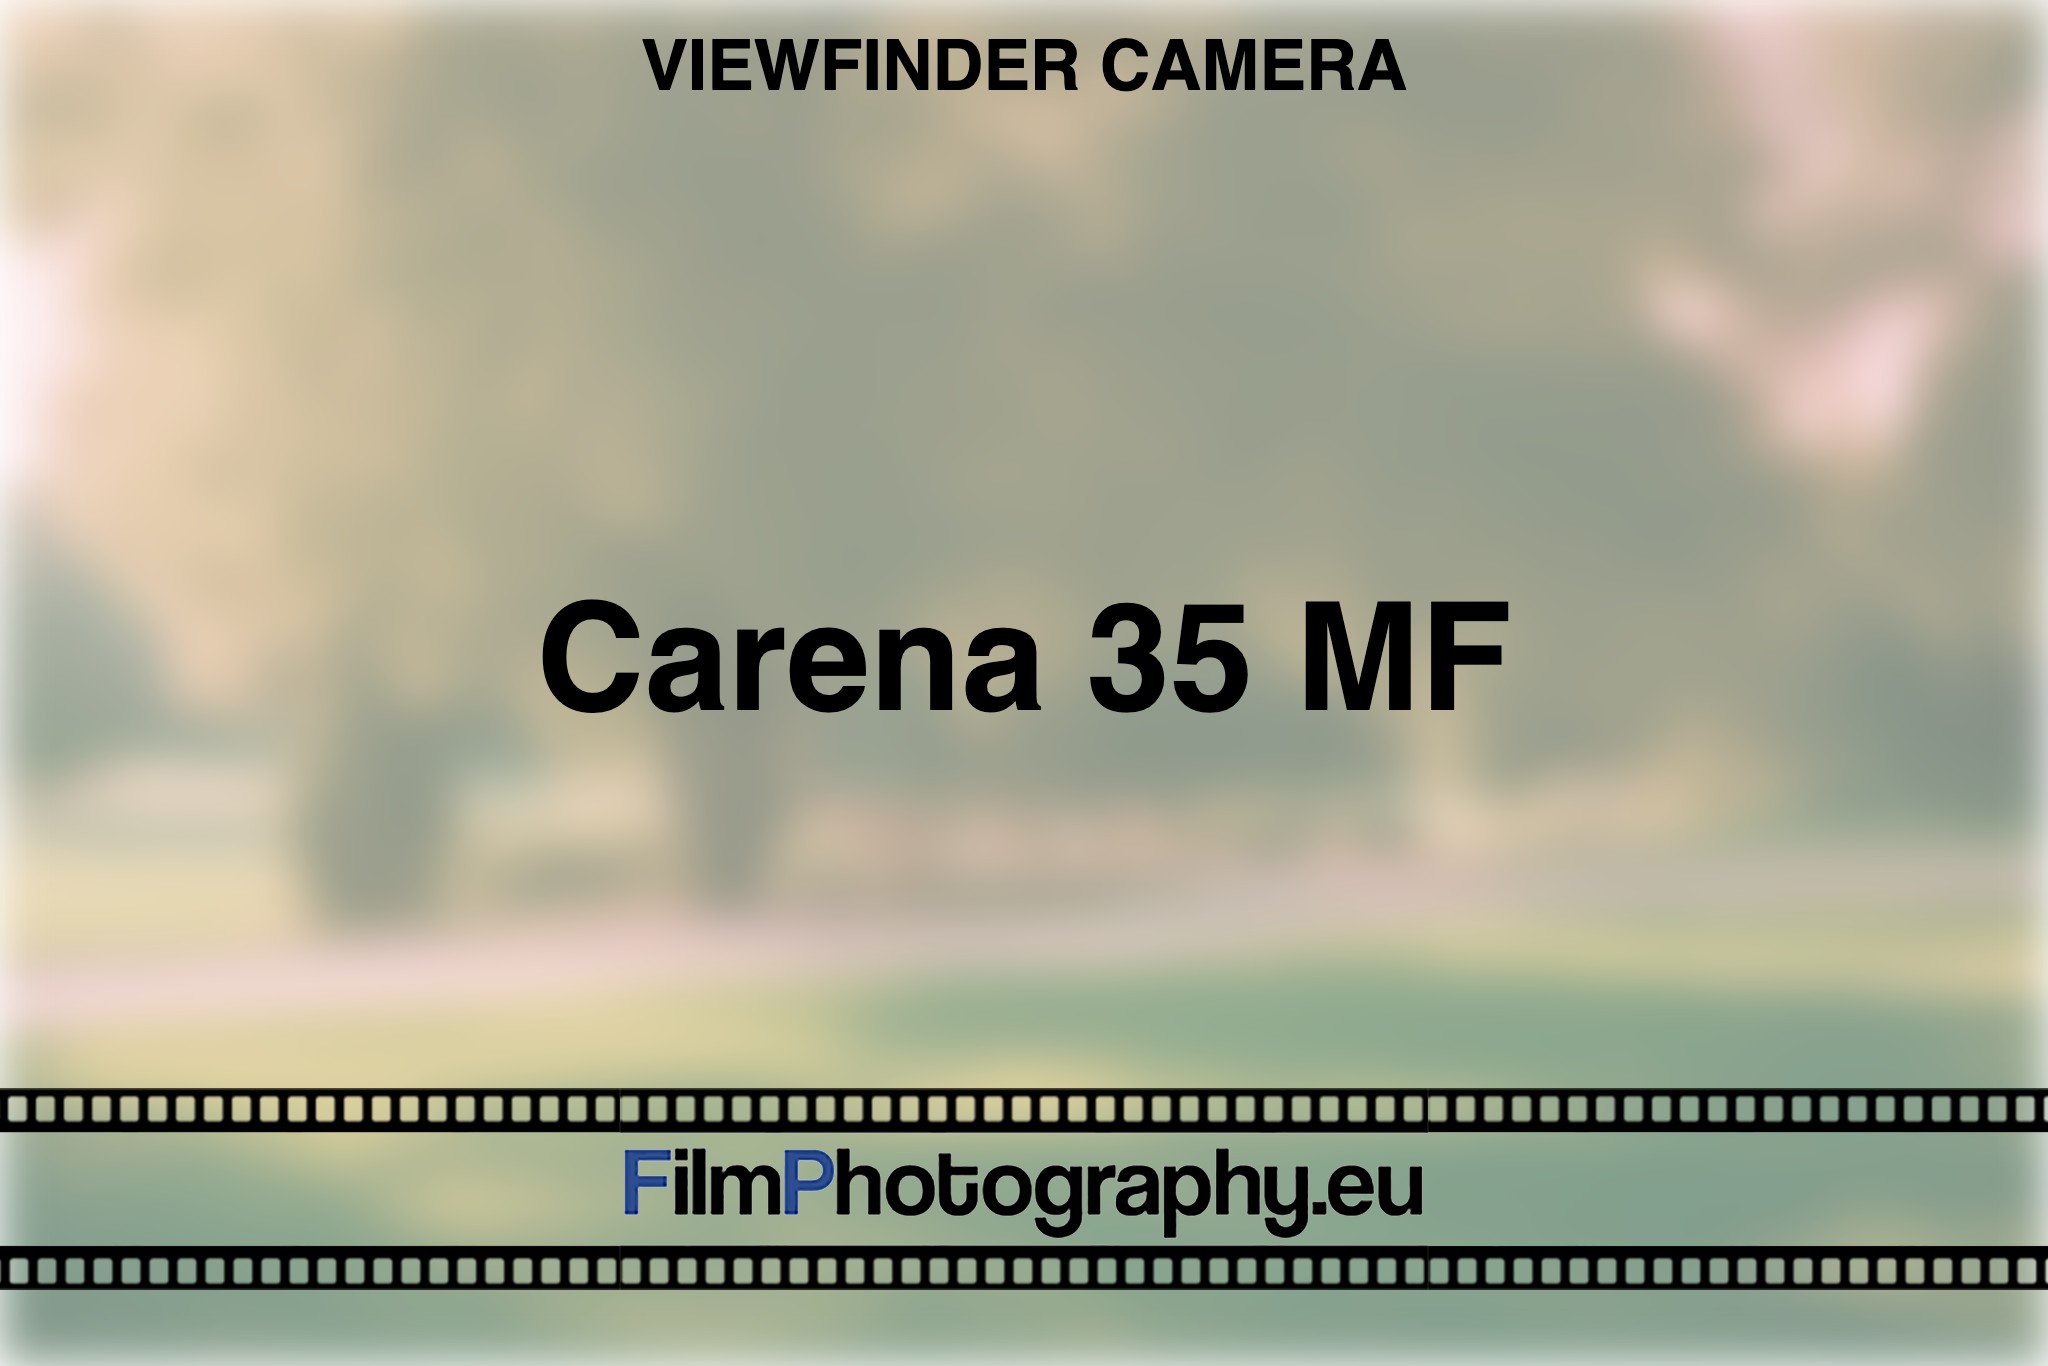 carena-35-mf-viewfinder-camera-bnv